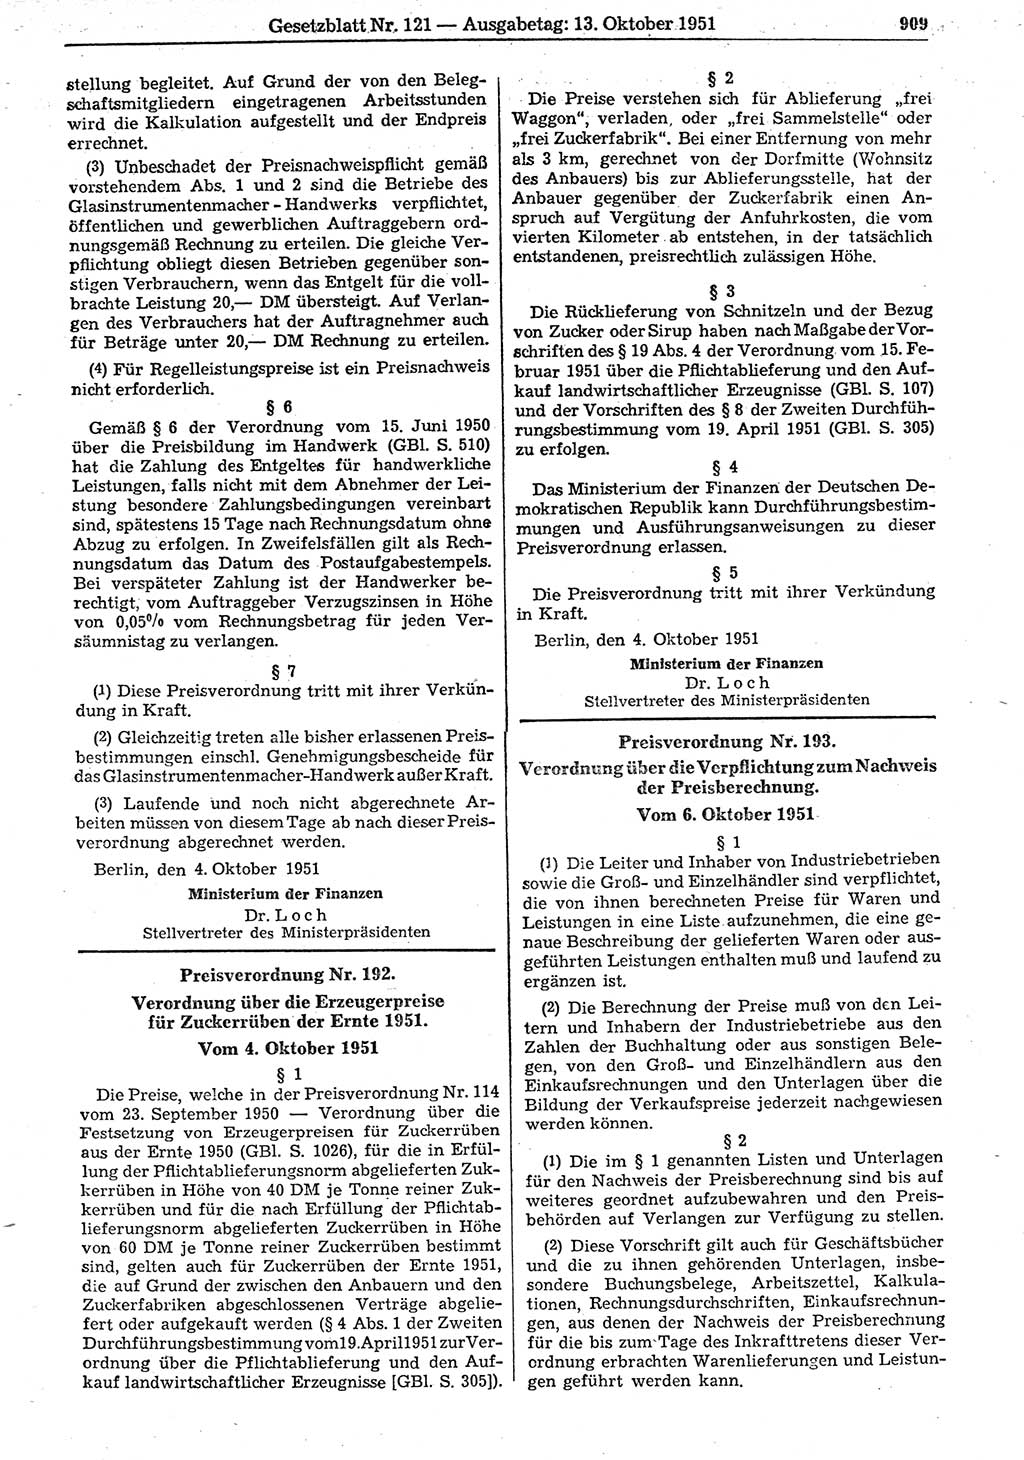 Gesetzblatt (GBl.) der Deutschen Demokratischen Republik (DDR) 1951, Seite 909 (GBl. DDR 1951, S. 909)